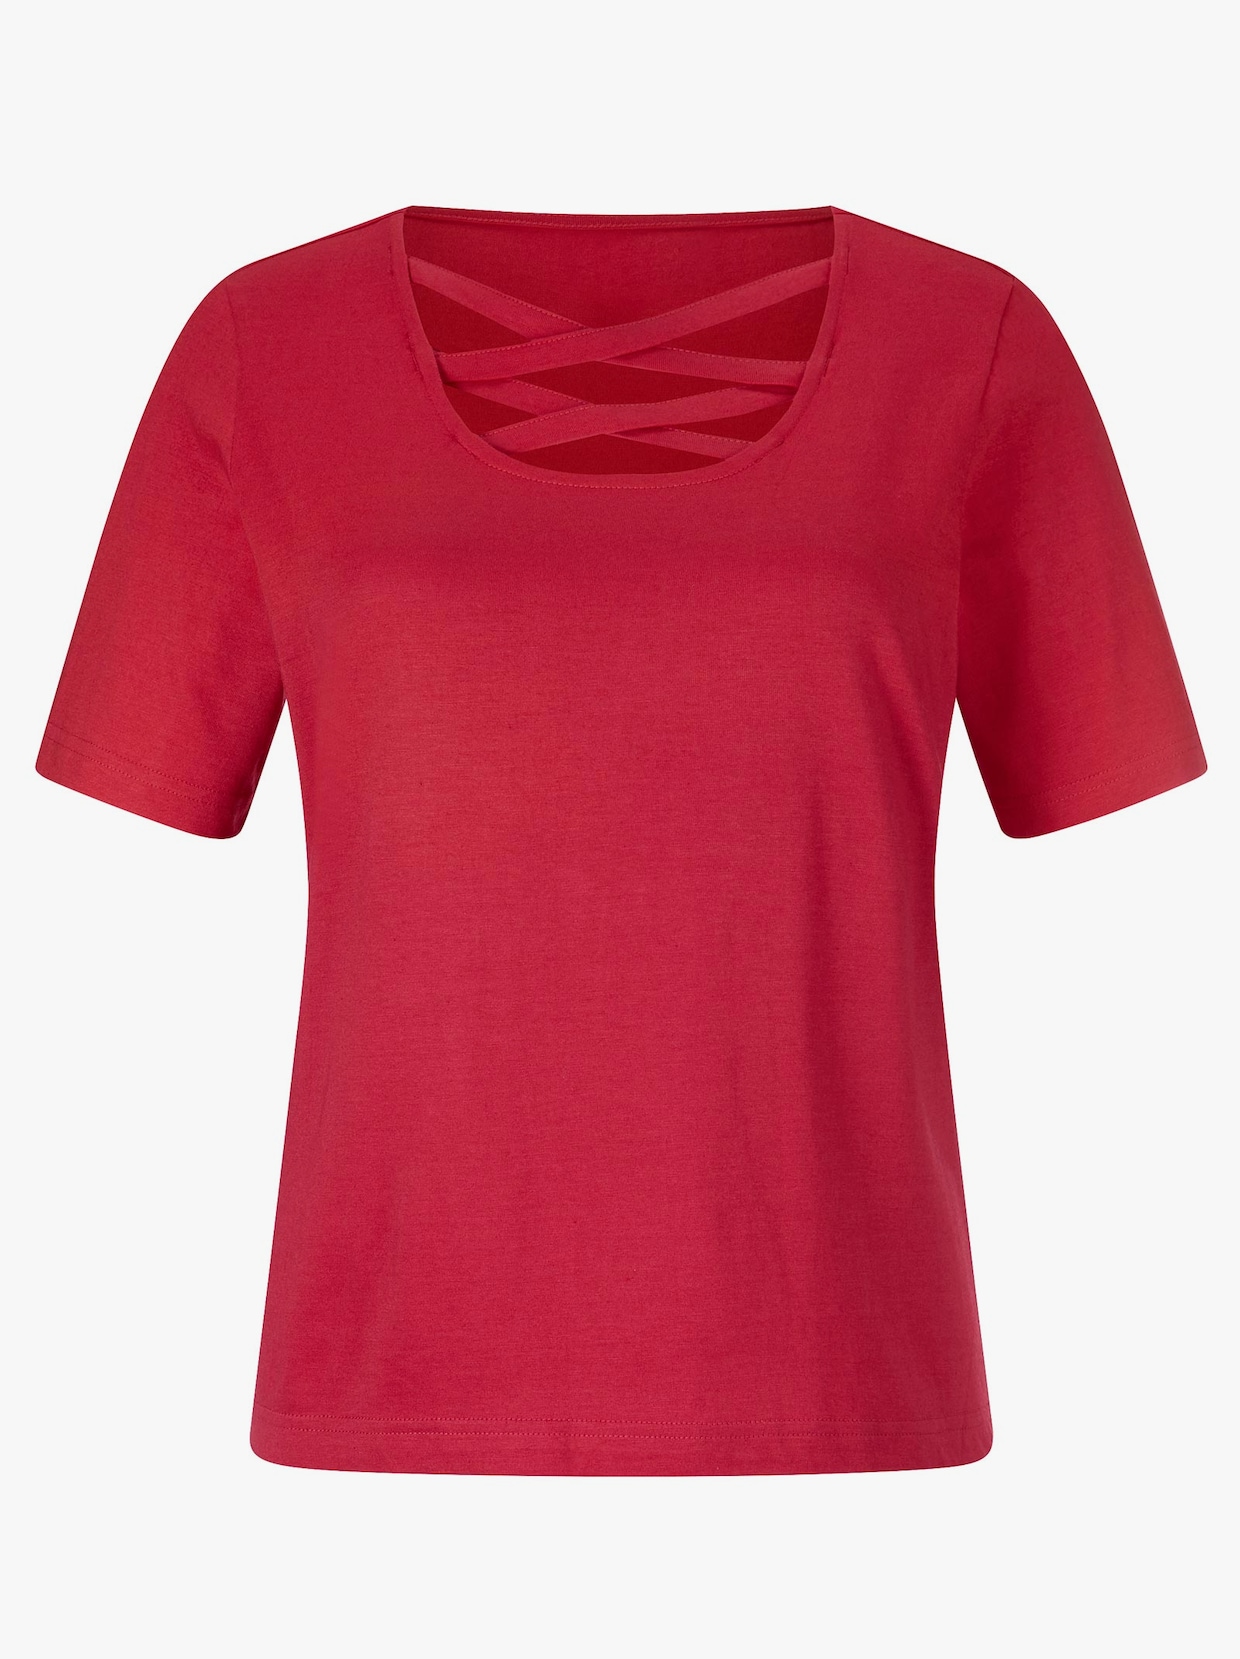 Tričko s krátkým rukávem - makově červená